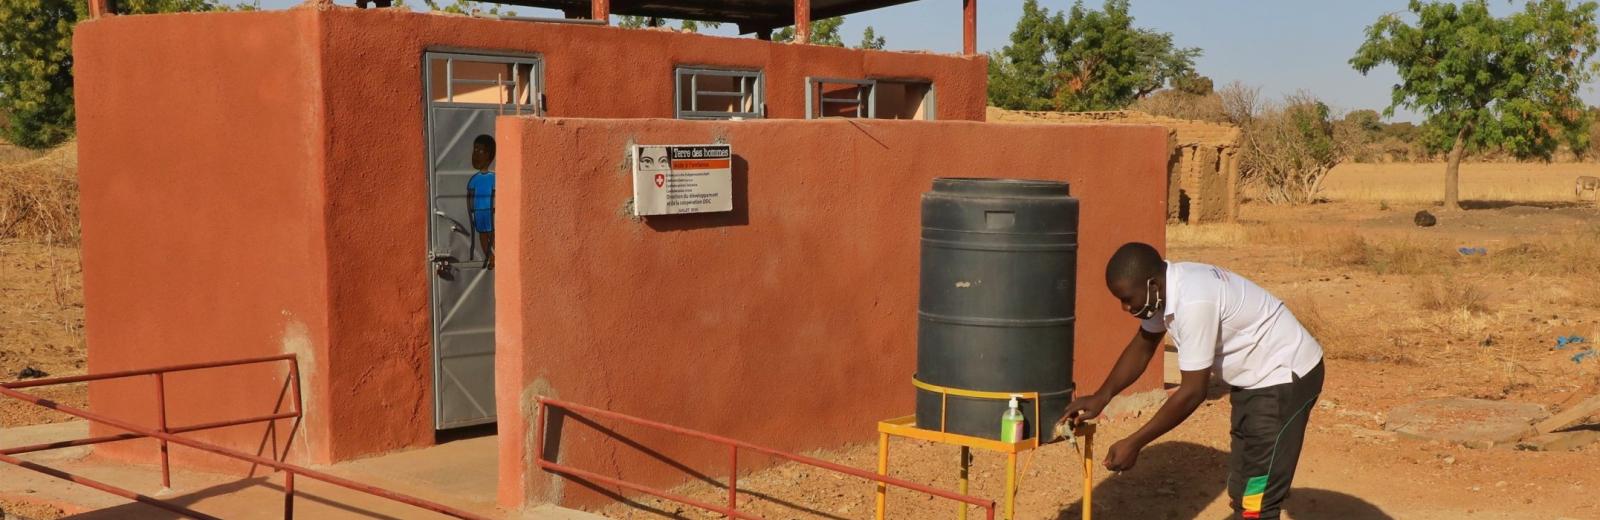  Il consorzio svizzero per l'acqua e il risanamento si sforza di fornire infrastrutture sanitarie dignitose e adatte alla mobilità di tutti in Mali © Terre des hommes